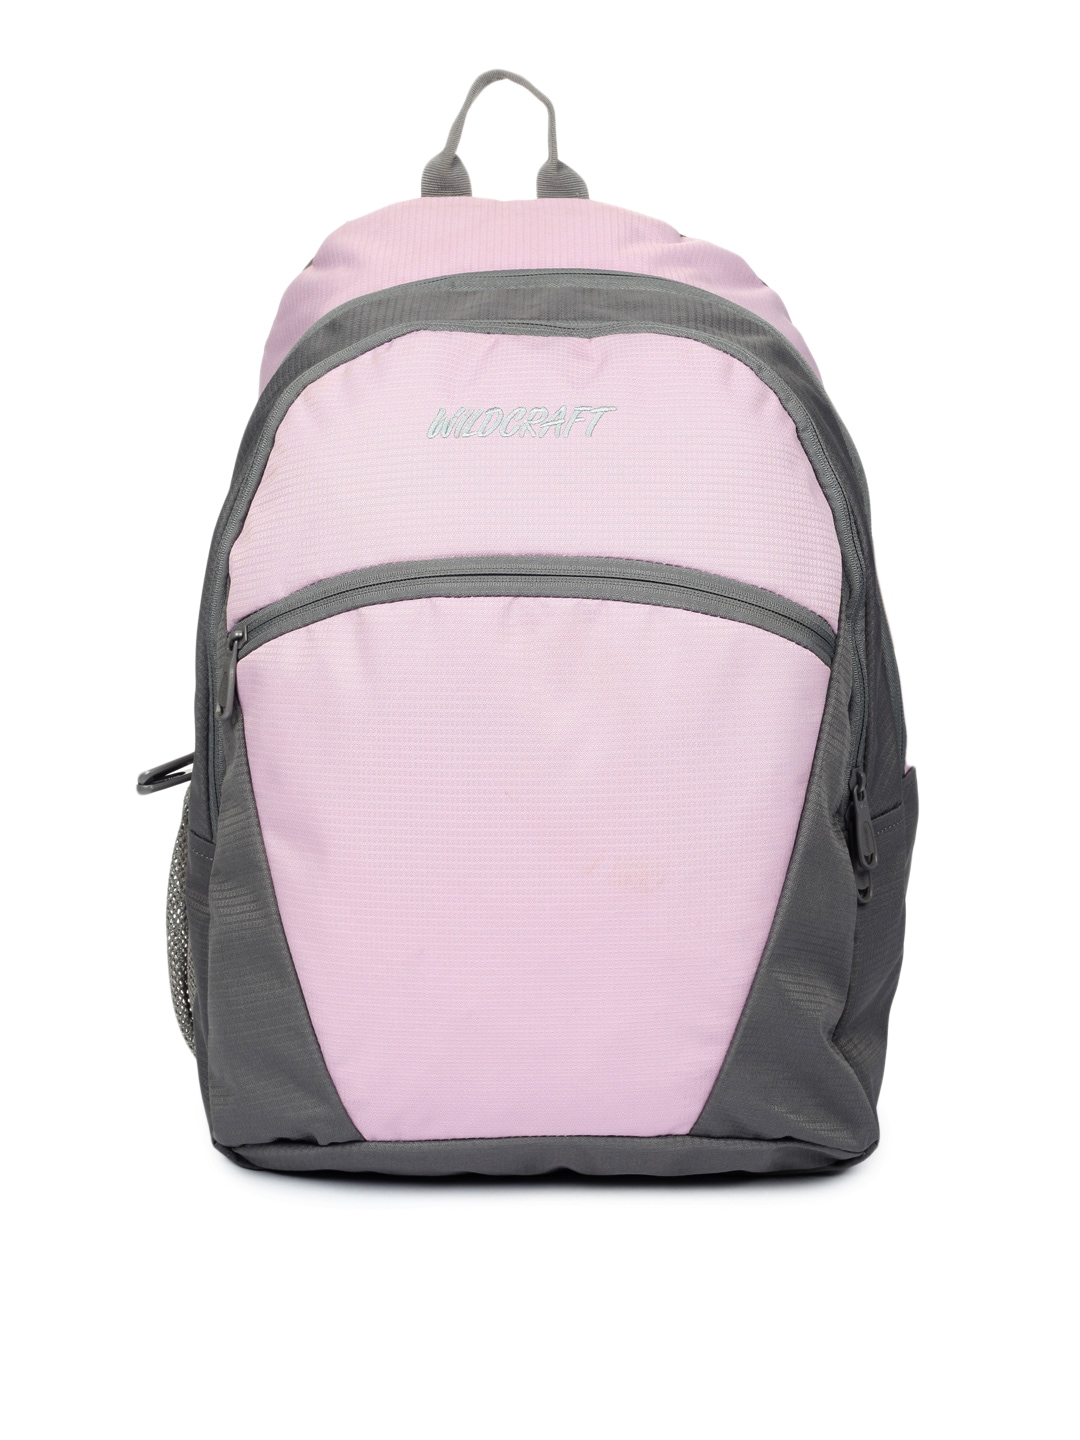 Wildcraft Unisex Pink & Grey Backpack